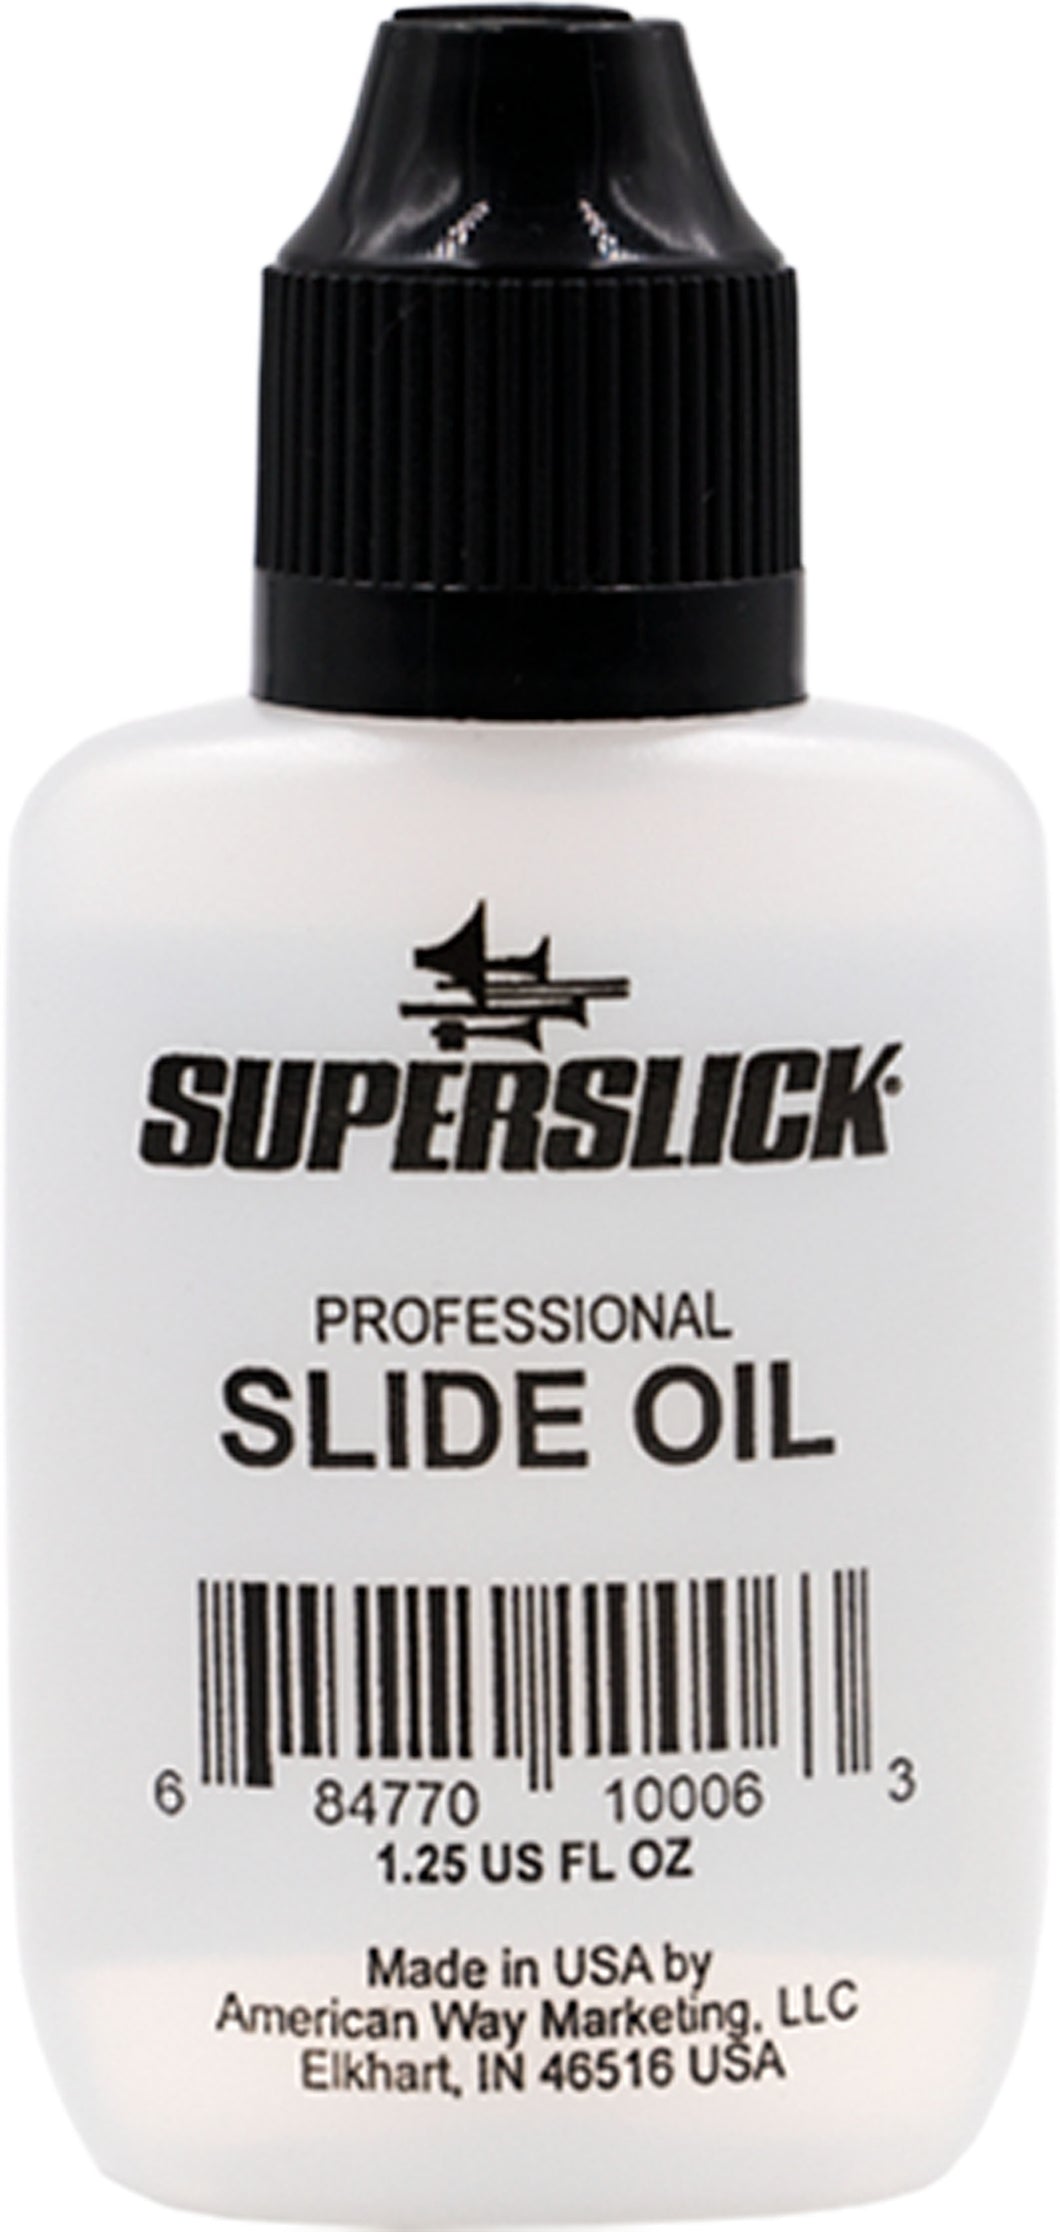 SuperSlick Trombone Slide Oil - 1.25oz